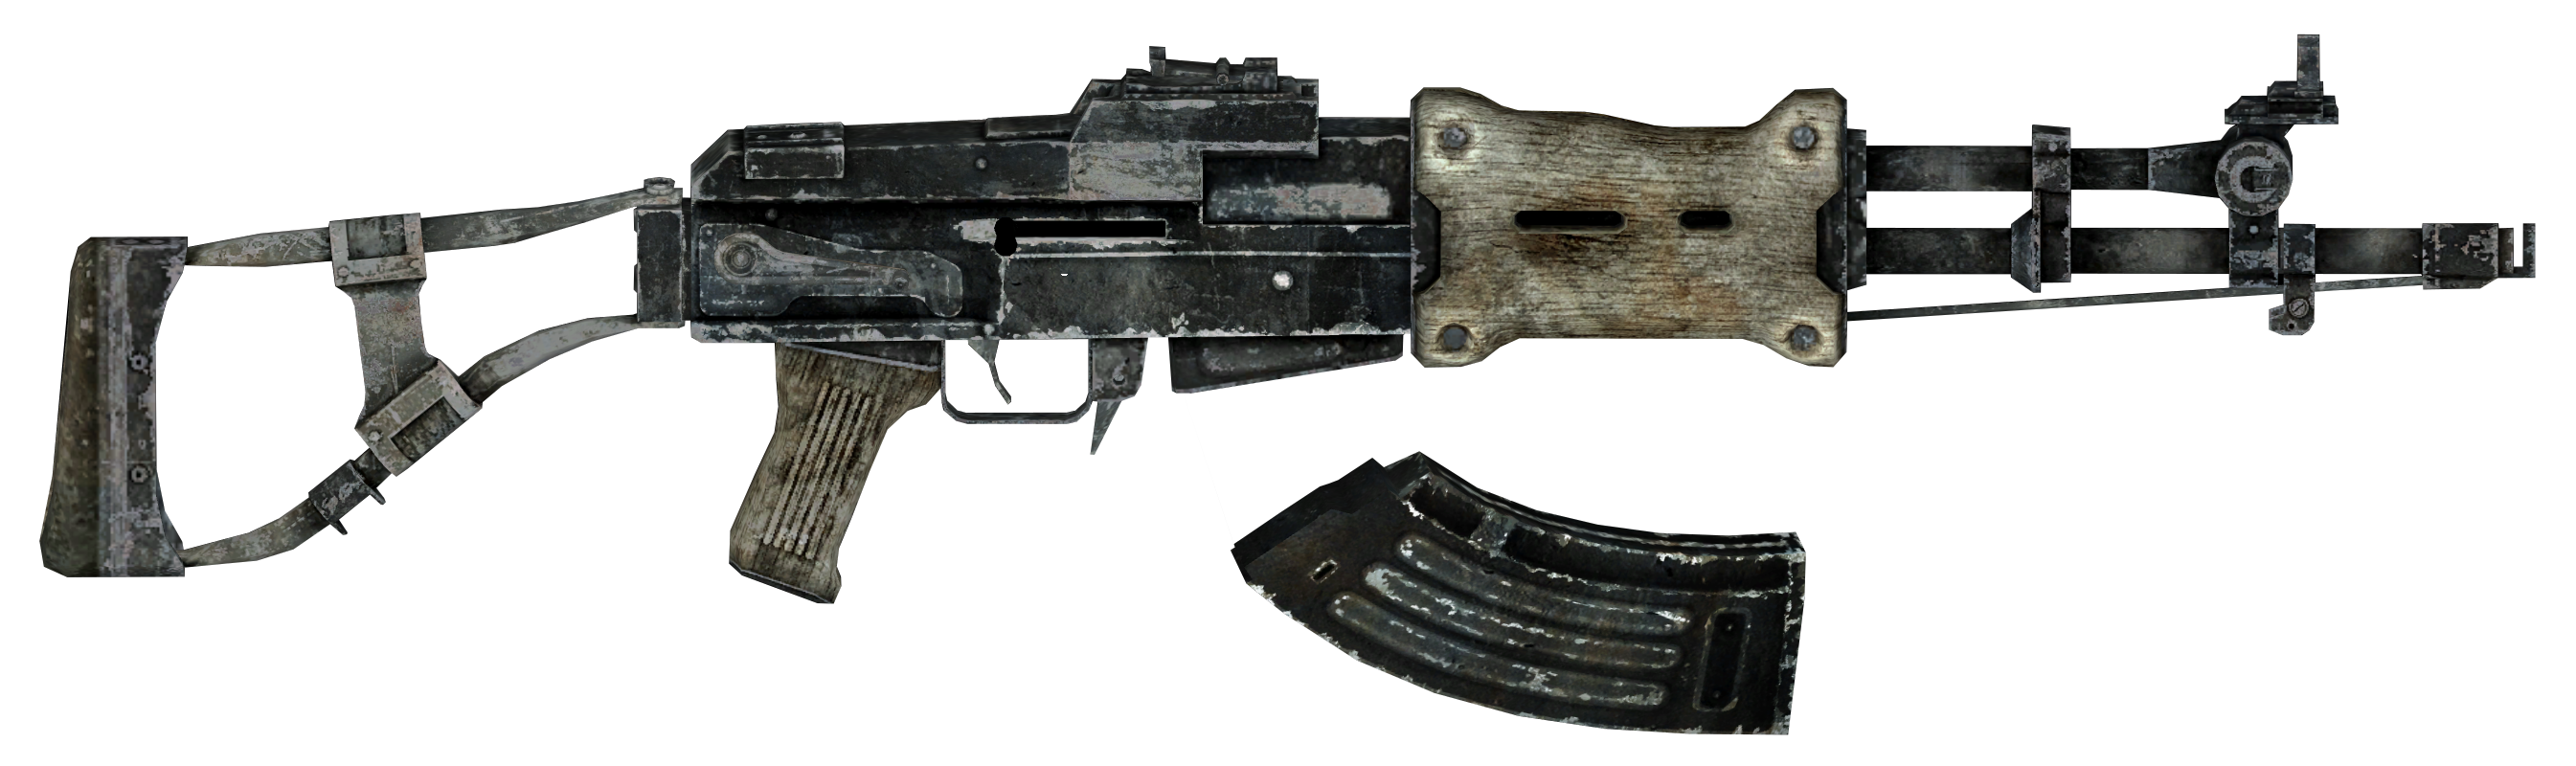 best pistol in fallout 3